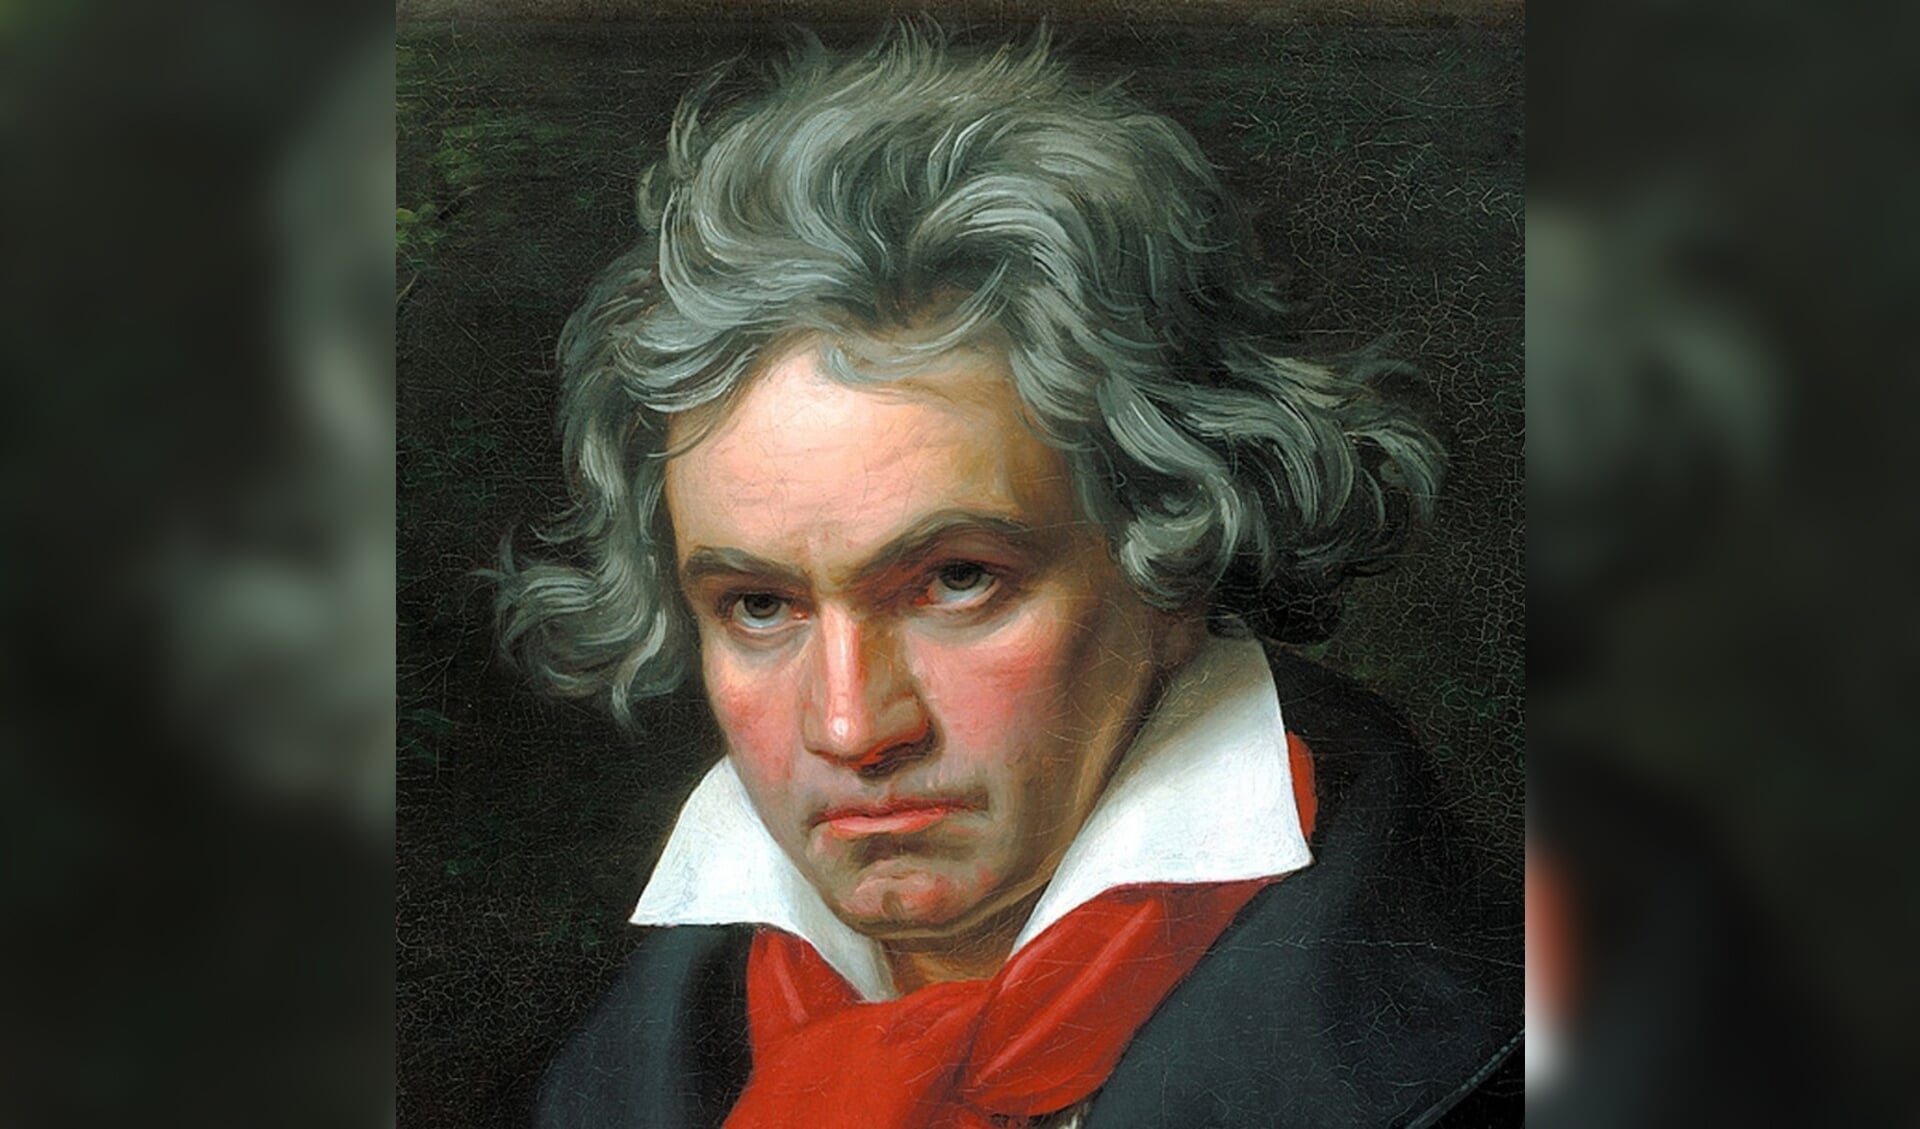 Beluister de mooiste muziek van Beethoven komend seizoen in de Edesche Concertzaal. 